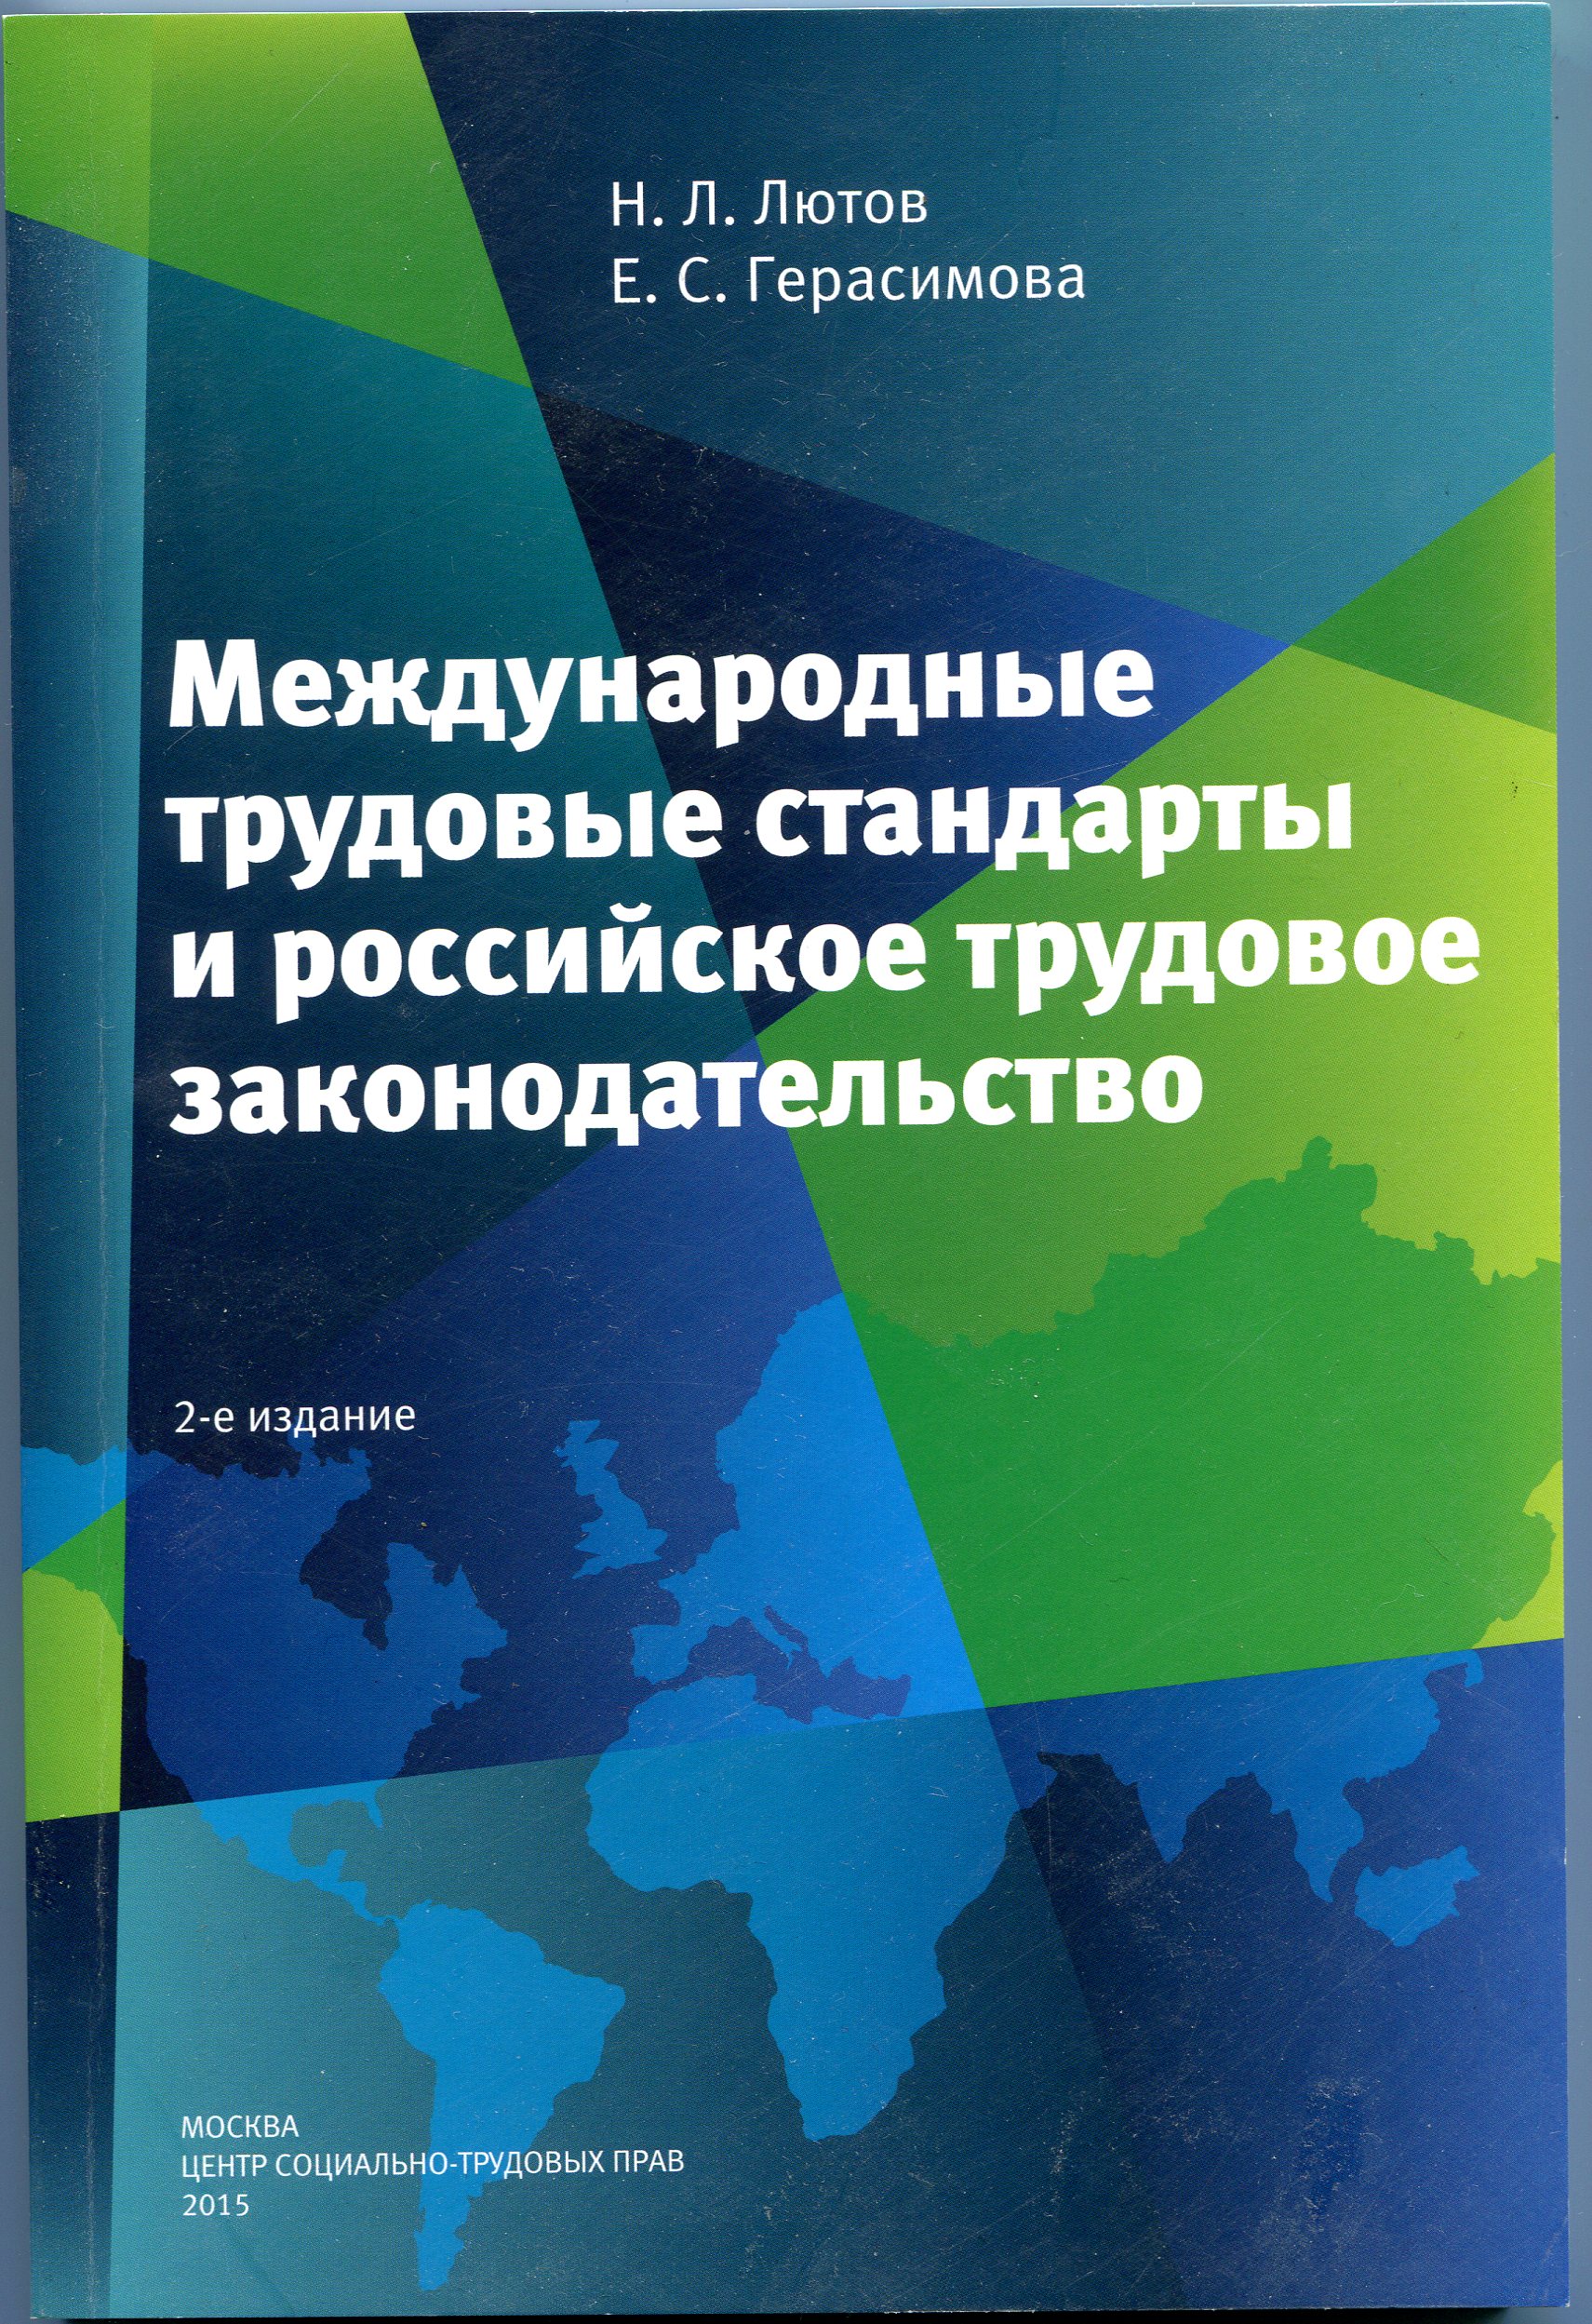 Международные трудовые стандарты и российское трудовое законодательство. Монография. 2-е издание.